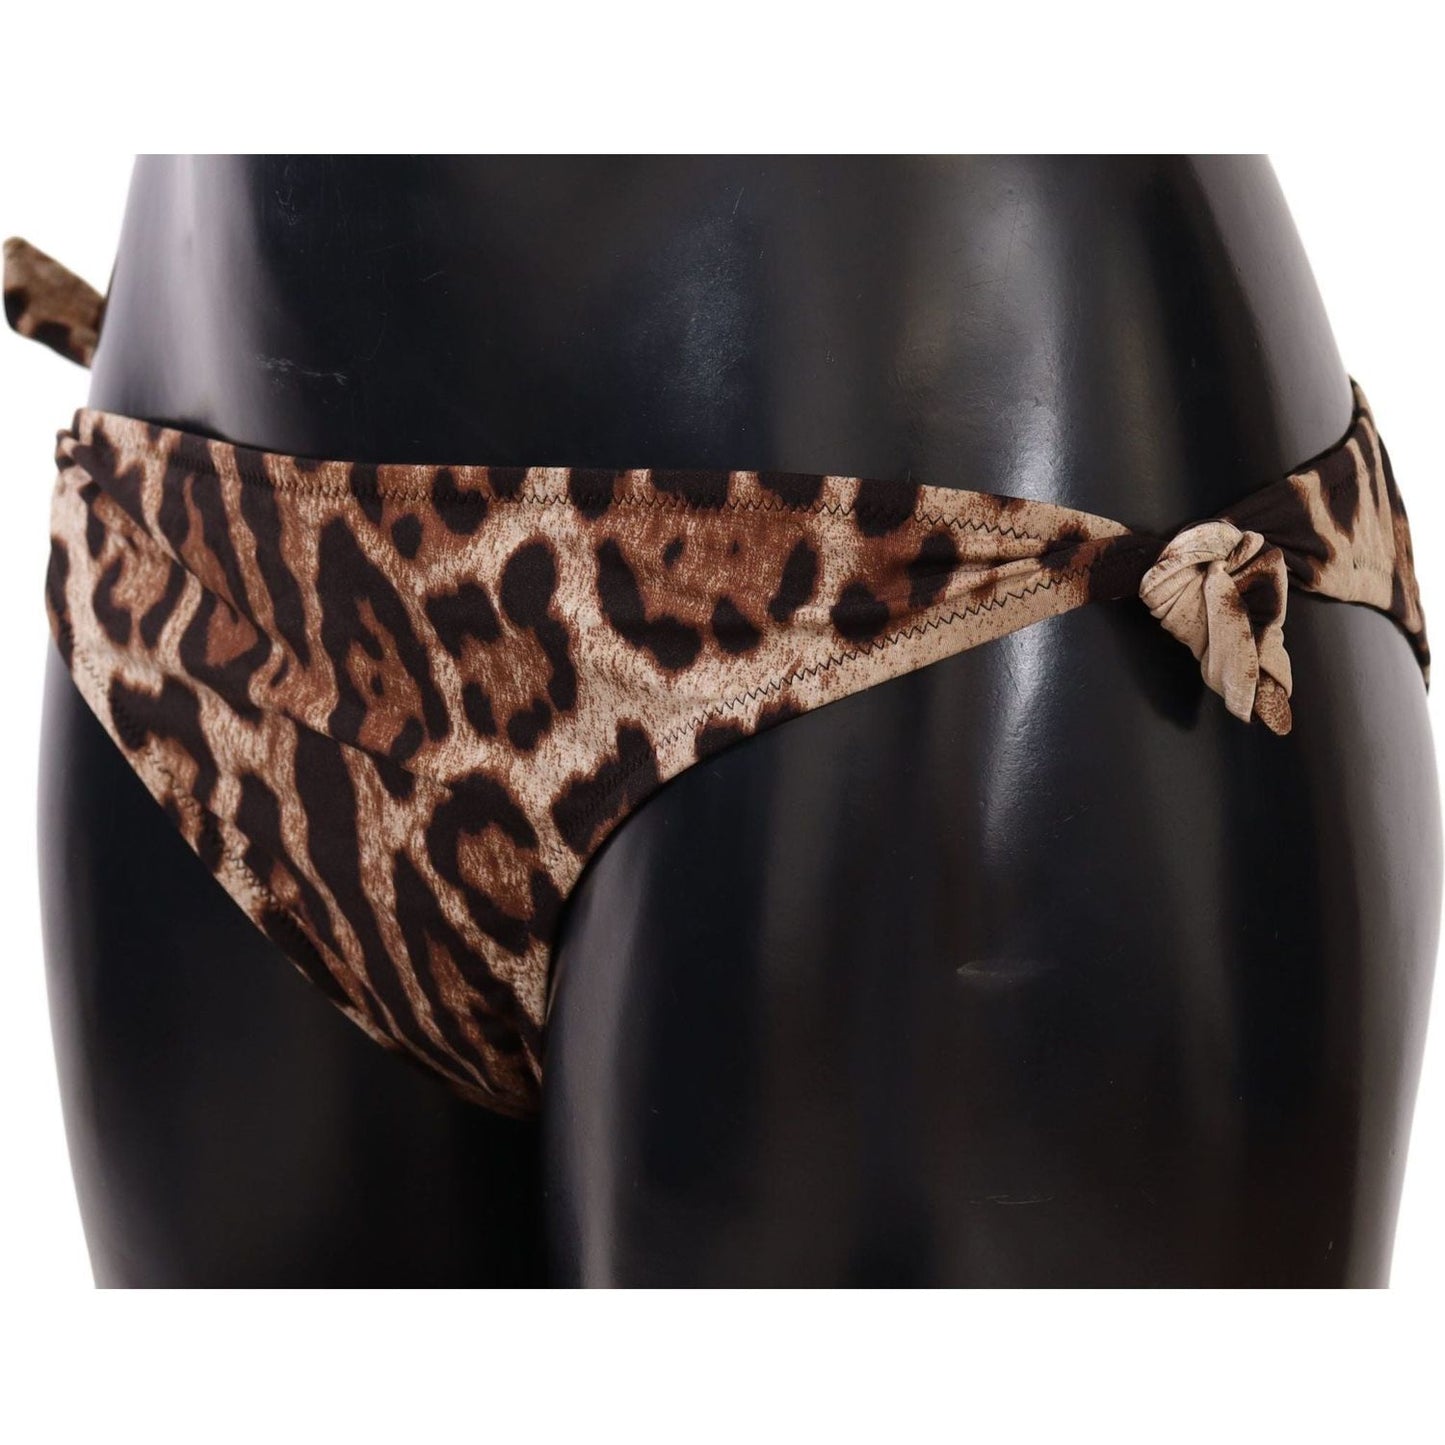 Dolce & Gabbana Bikini Bottom Brown Leopard Print Swimsuit Swimwear bikini-bottom-brown-leopard-print-swimsuit-swimwear WOMAN SWIMWEAR IMG_8328-scaled-42784a78-781.jpg